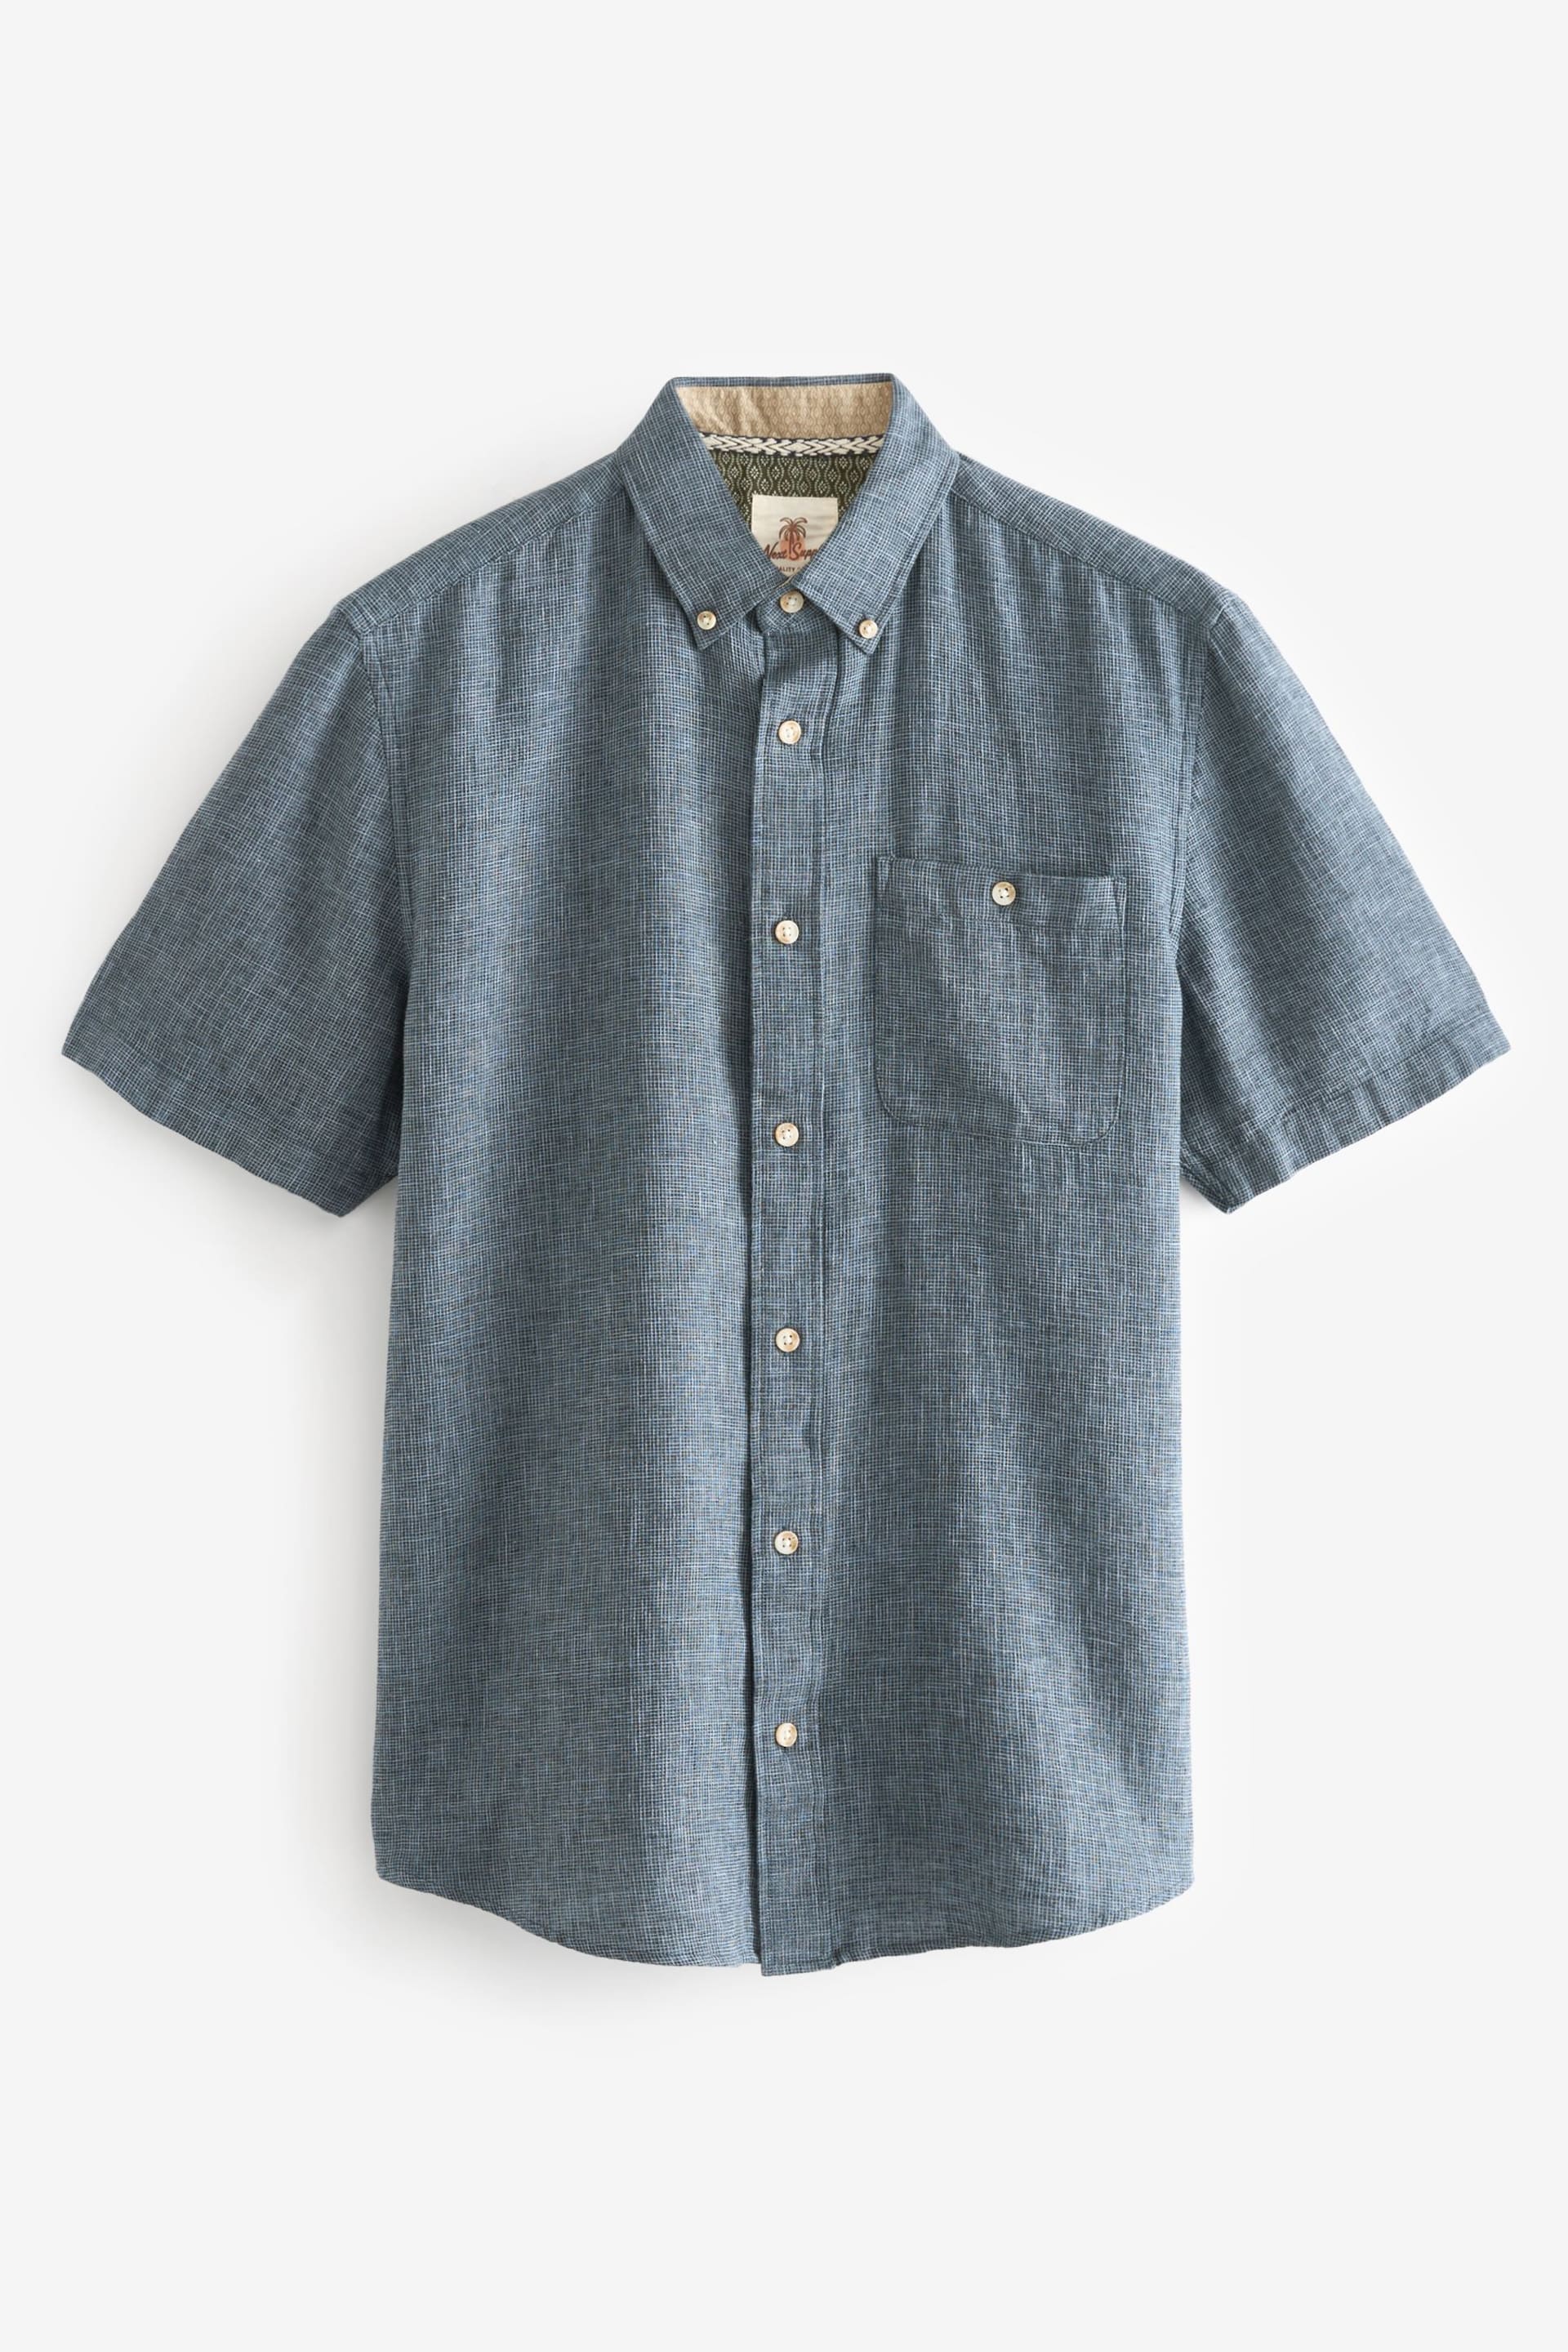 Navy Standard Collar Linen Blend Short Sleeve Shirt - Image 2 of 4